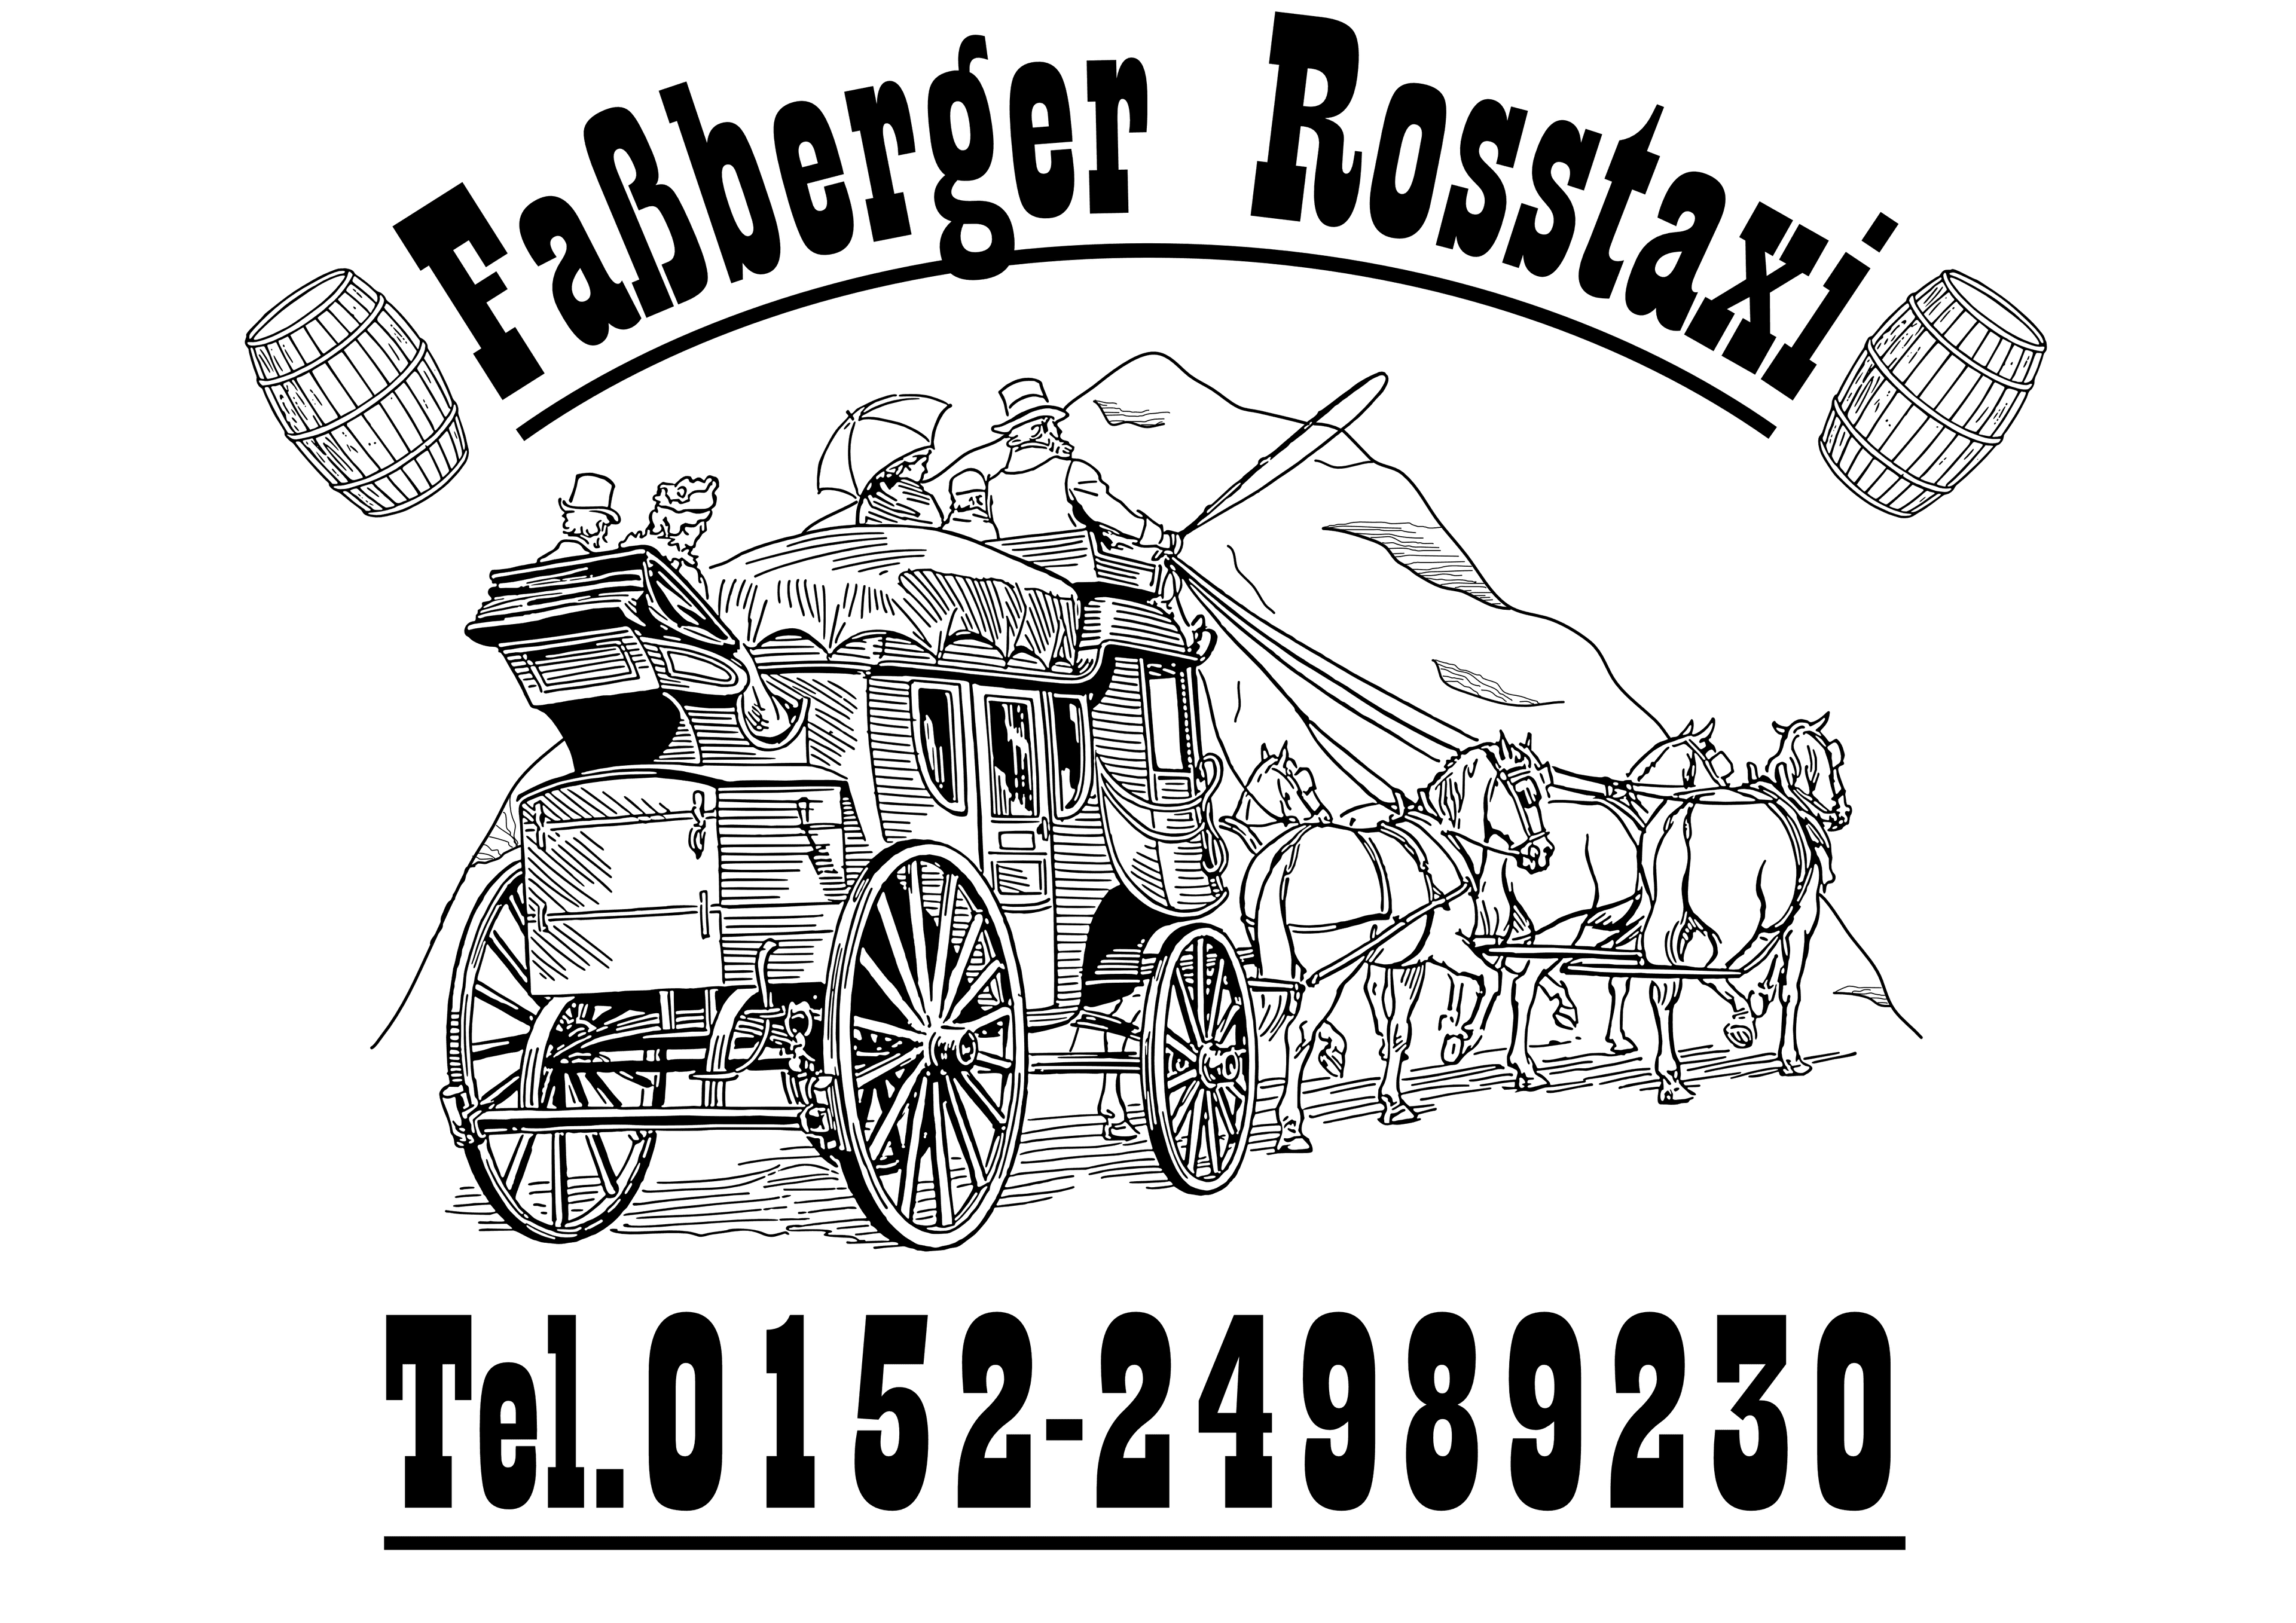 Fassberger Rosstaxi